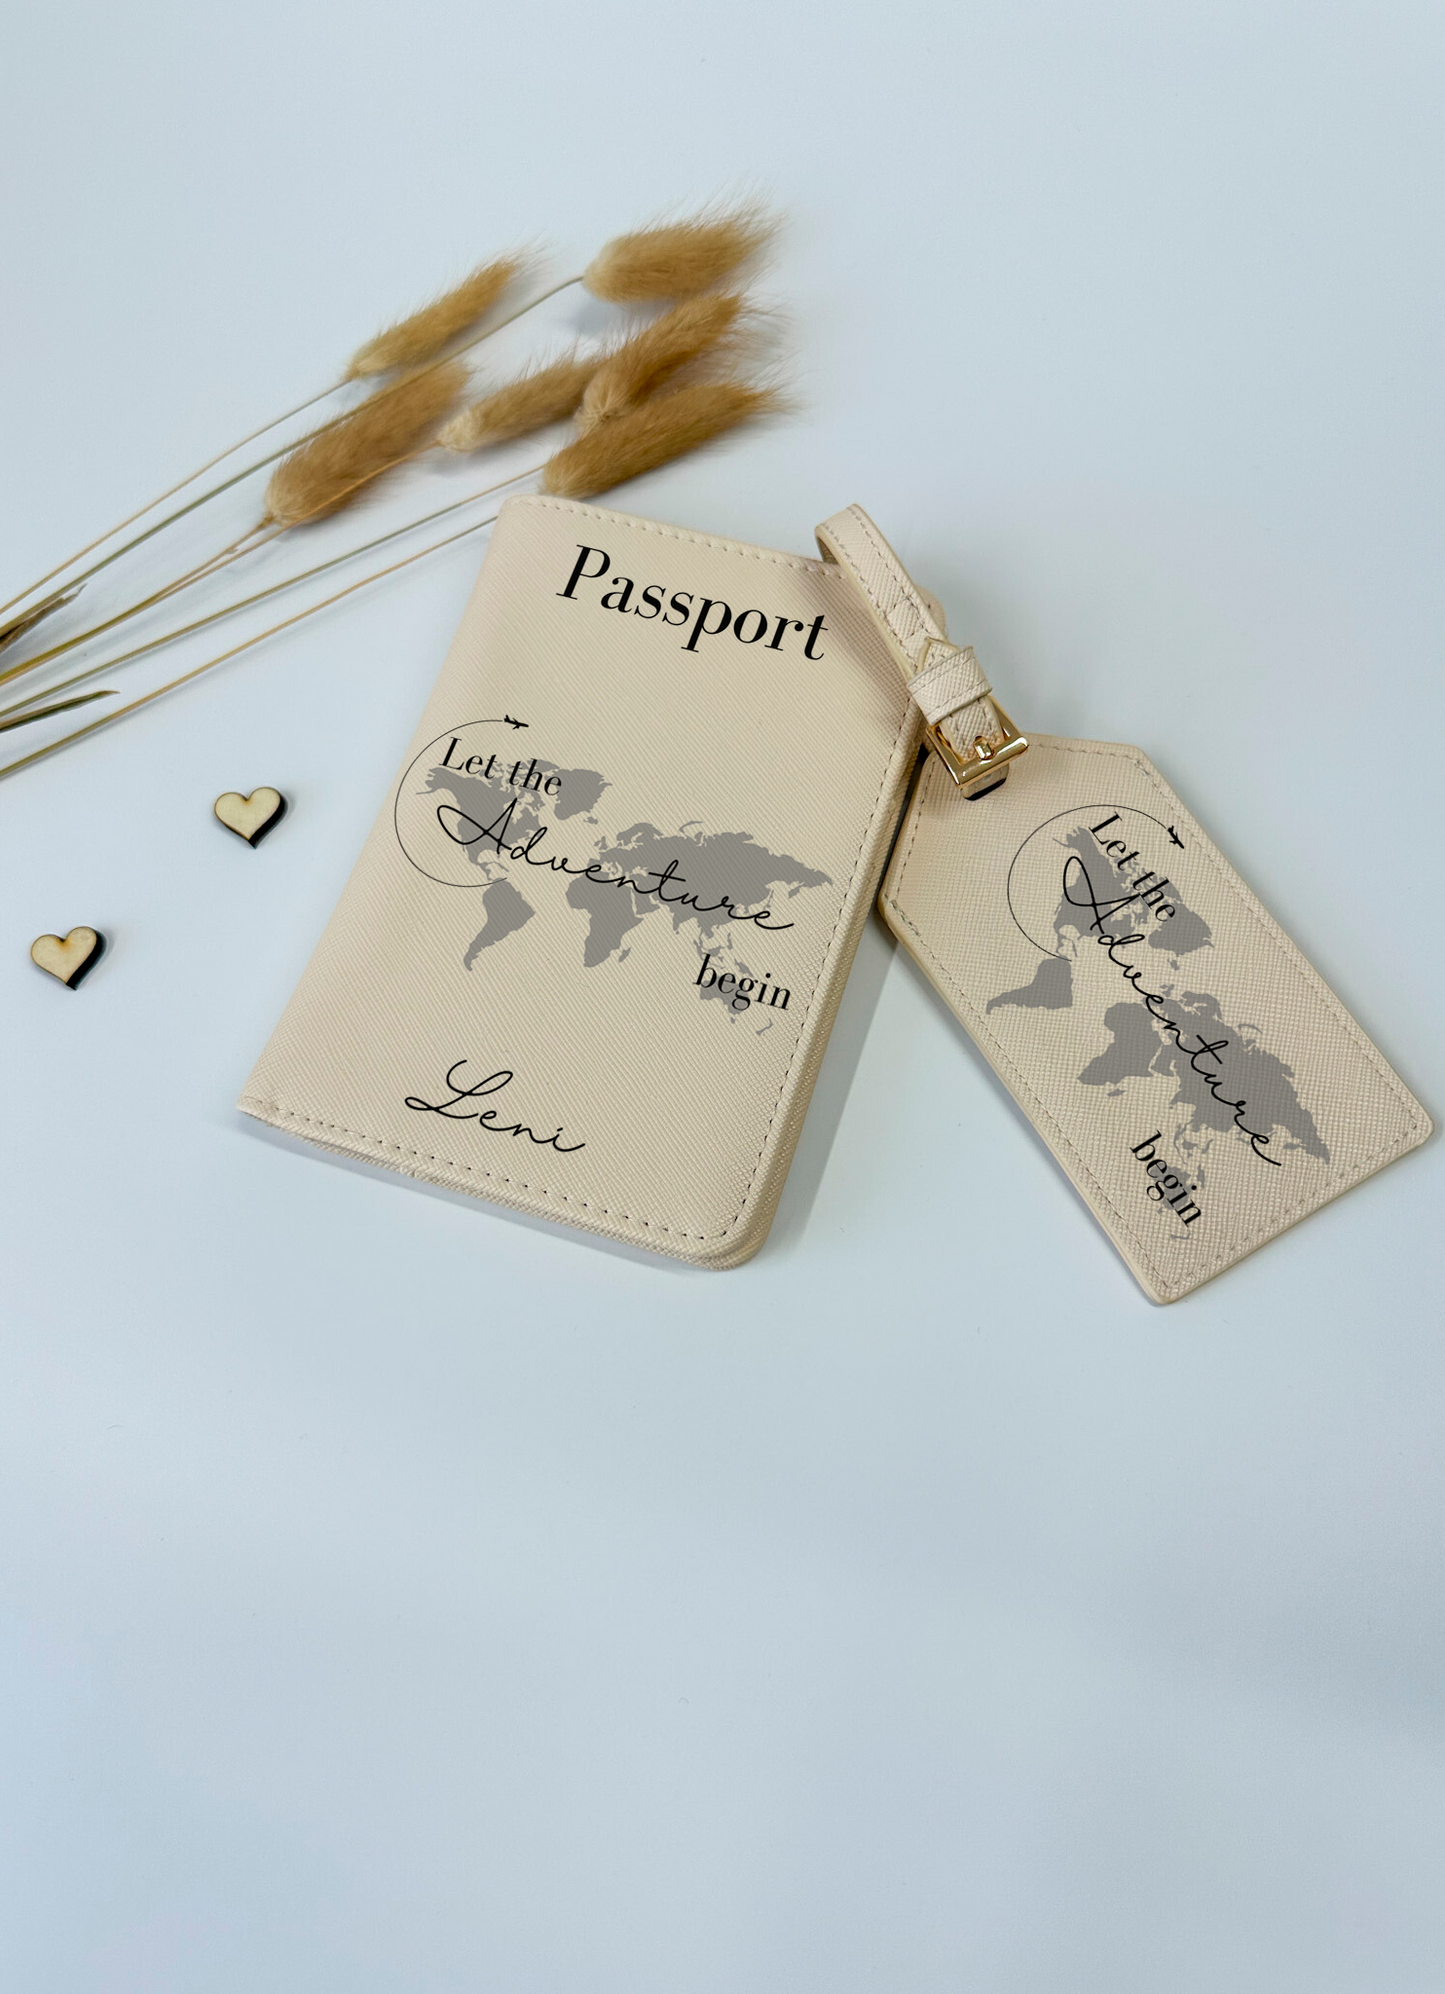 Reisepasshülle/Passhülle mit Namen/Reisepasshülle personalisiert/Passhülle für die Tasche/Passhülle personalisiert/Kofferanhänger